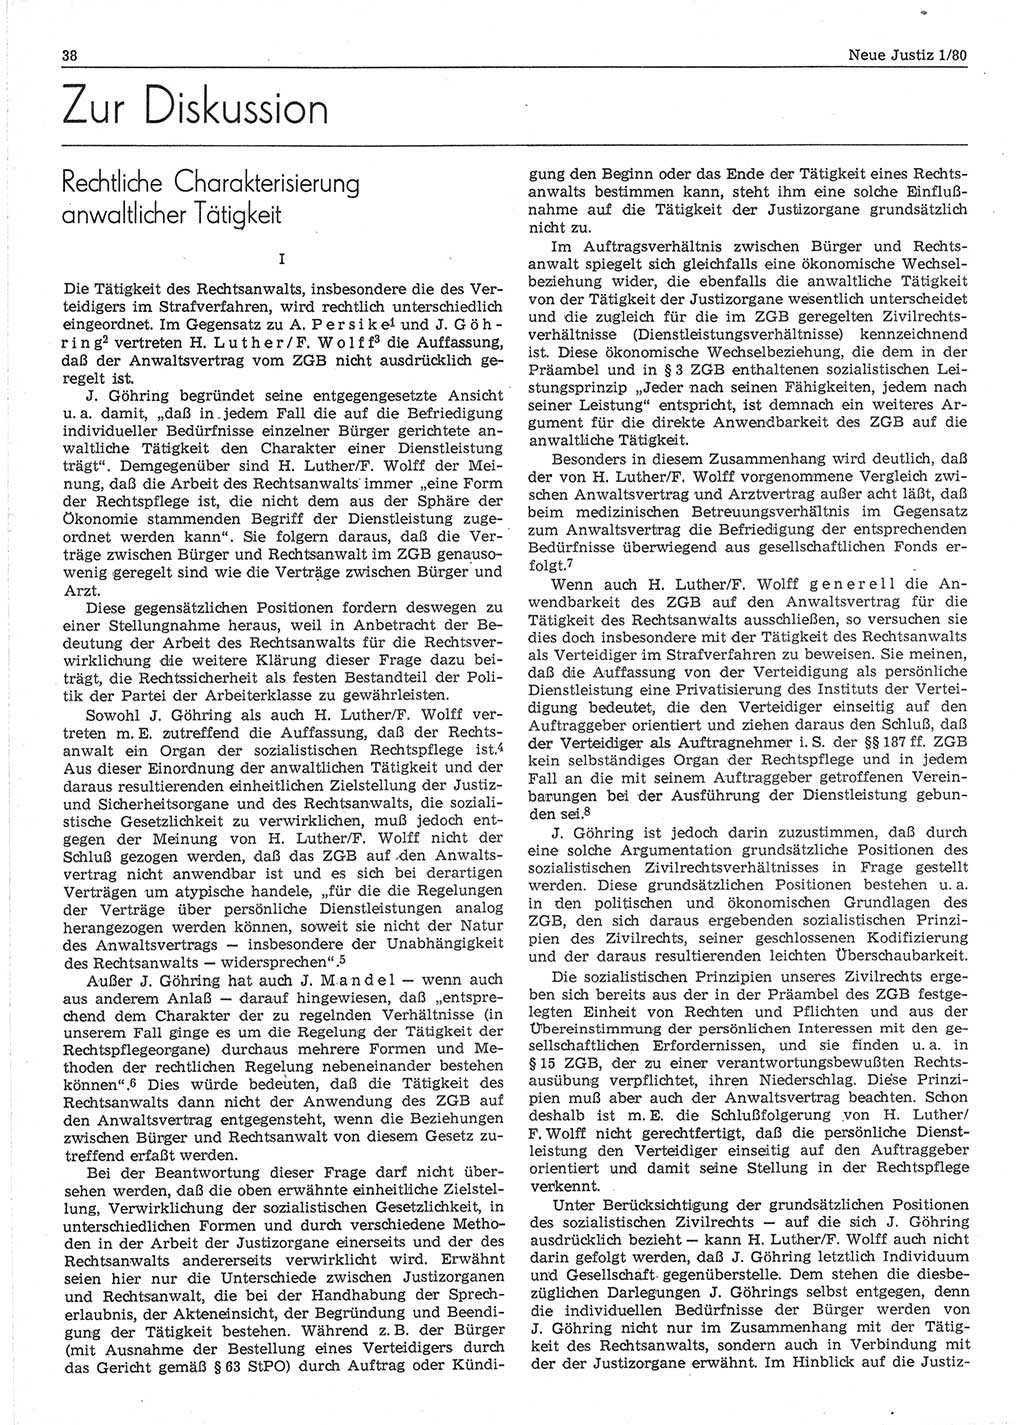 Neue Justiz (NJ), Zeitschrift für sozialistisches Recht und Gesetzlichkeit [Deutsche Demokratische Republik (DDR)], 34. Jahrgang 1980, Seite 38 (NJ DDR 1980, S. 38)